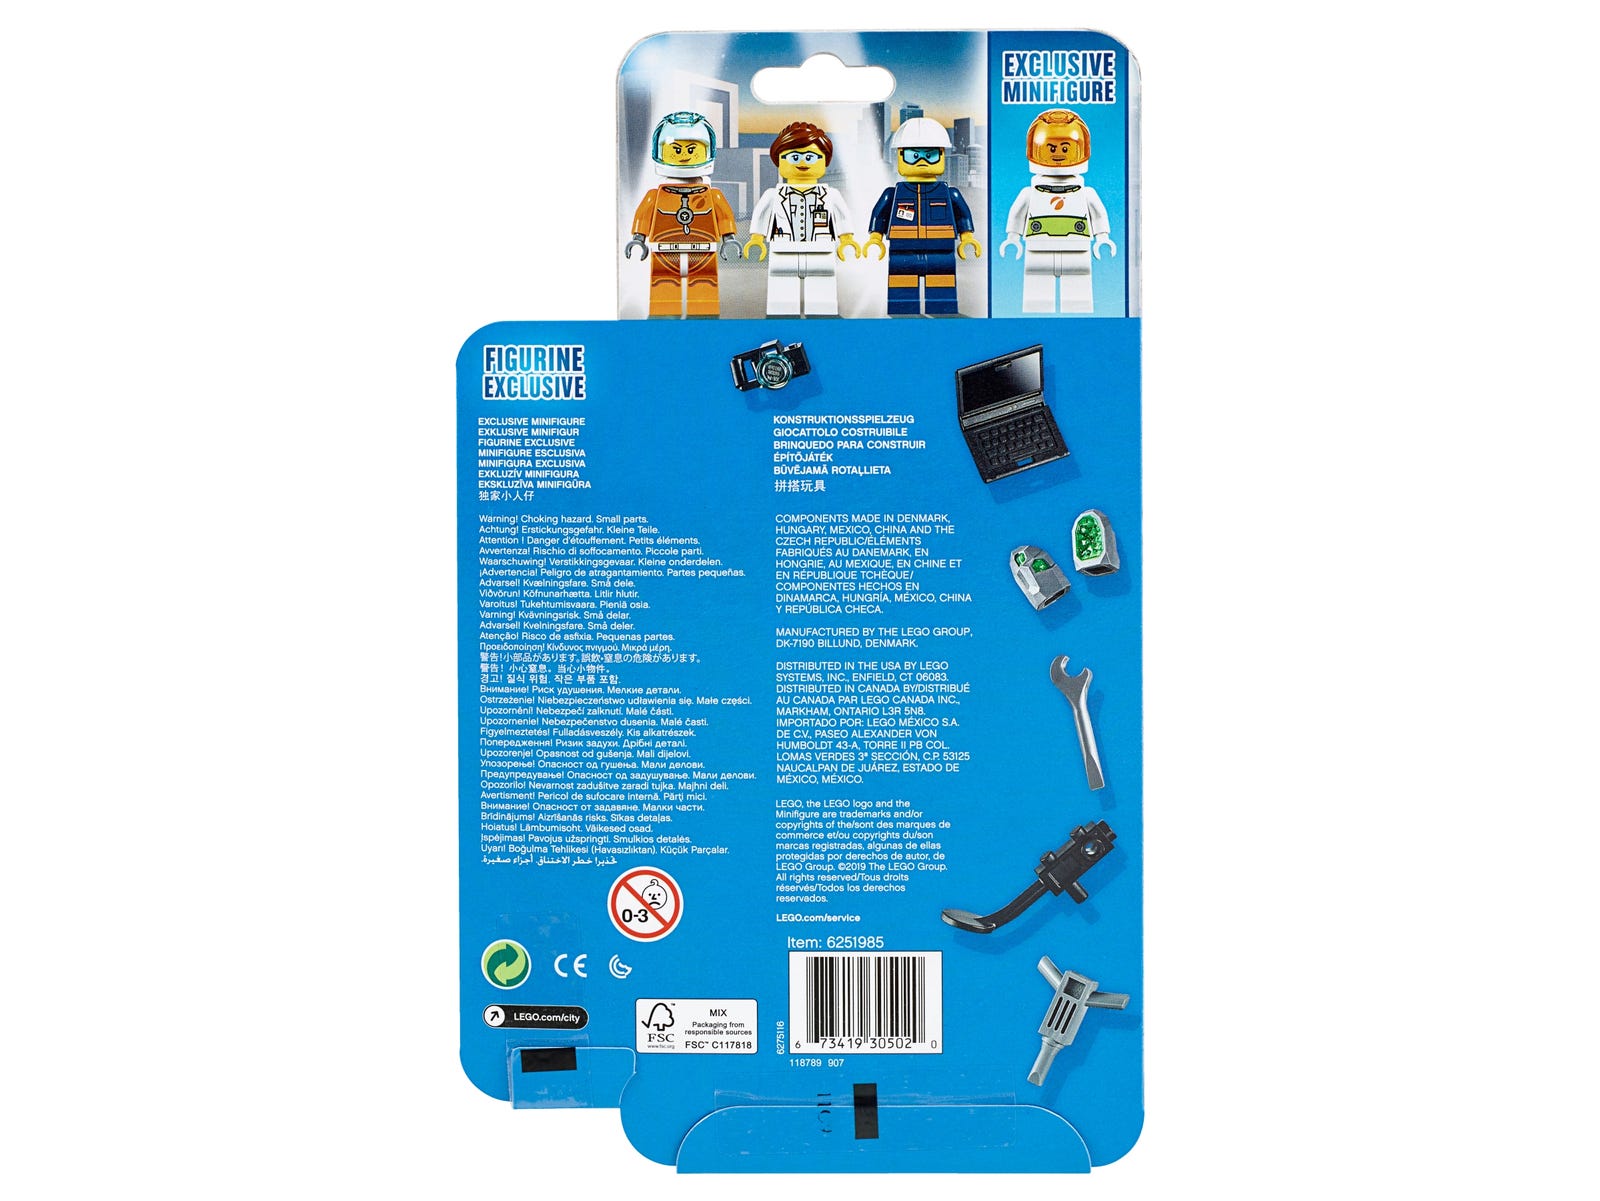 LEGO® City 40345 - Minifiguren-Set Weltraum